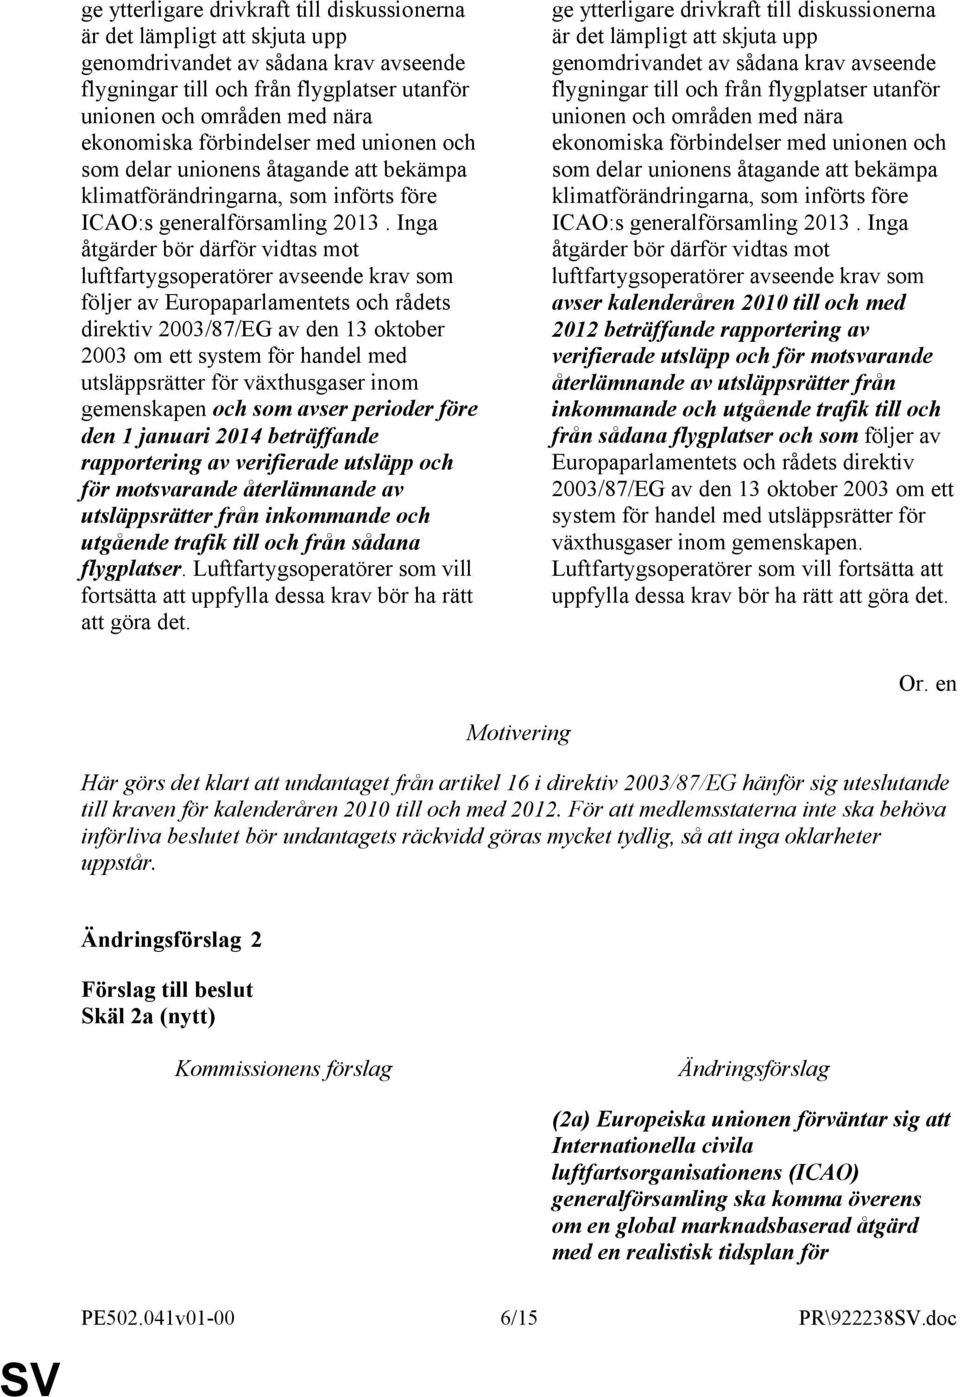 Inga åtgärder bör därför vidtas mot luftfartygsoperatörer avseende krav som följer av Europaparlamentets och rådets direktiv 2003/87/EG av den 13 oktober 2003 om ett system för handel med